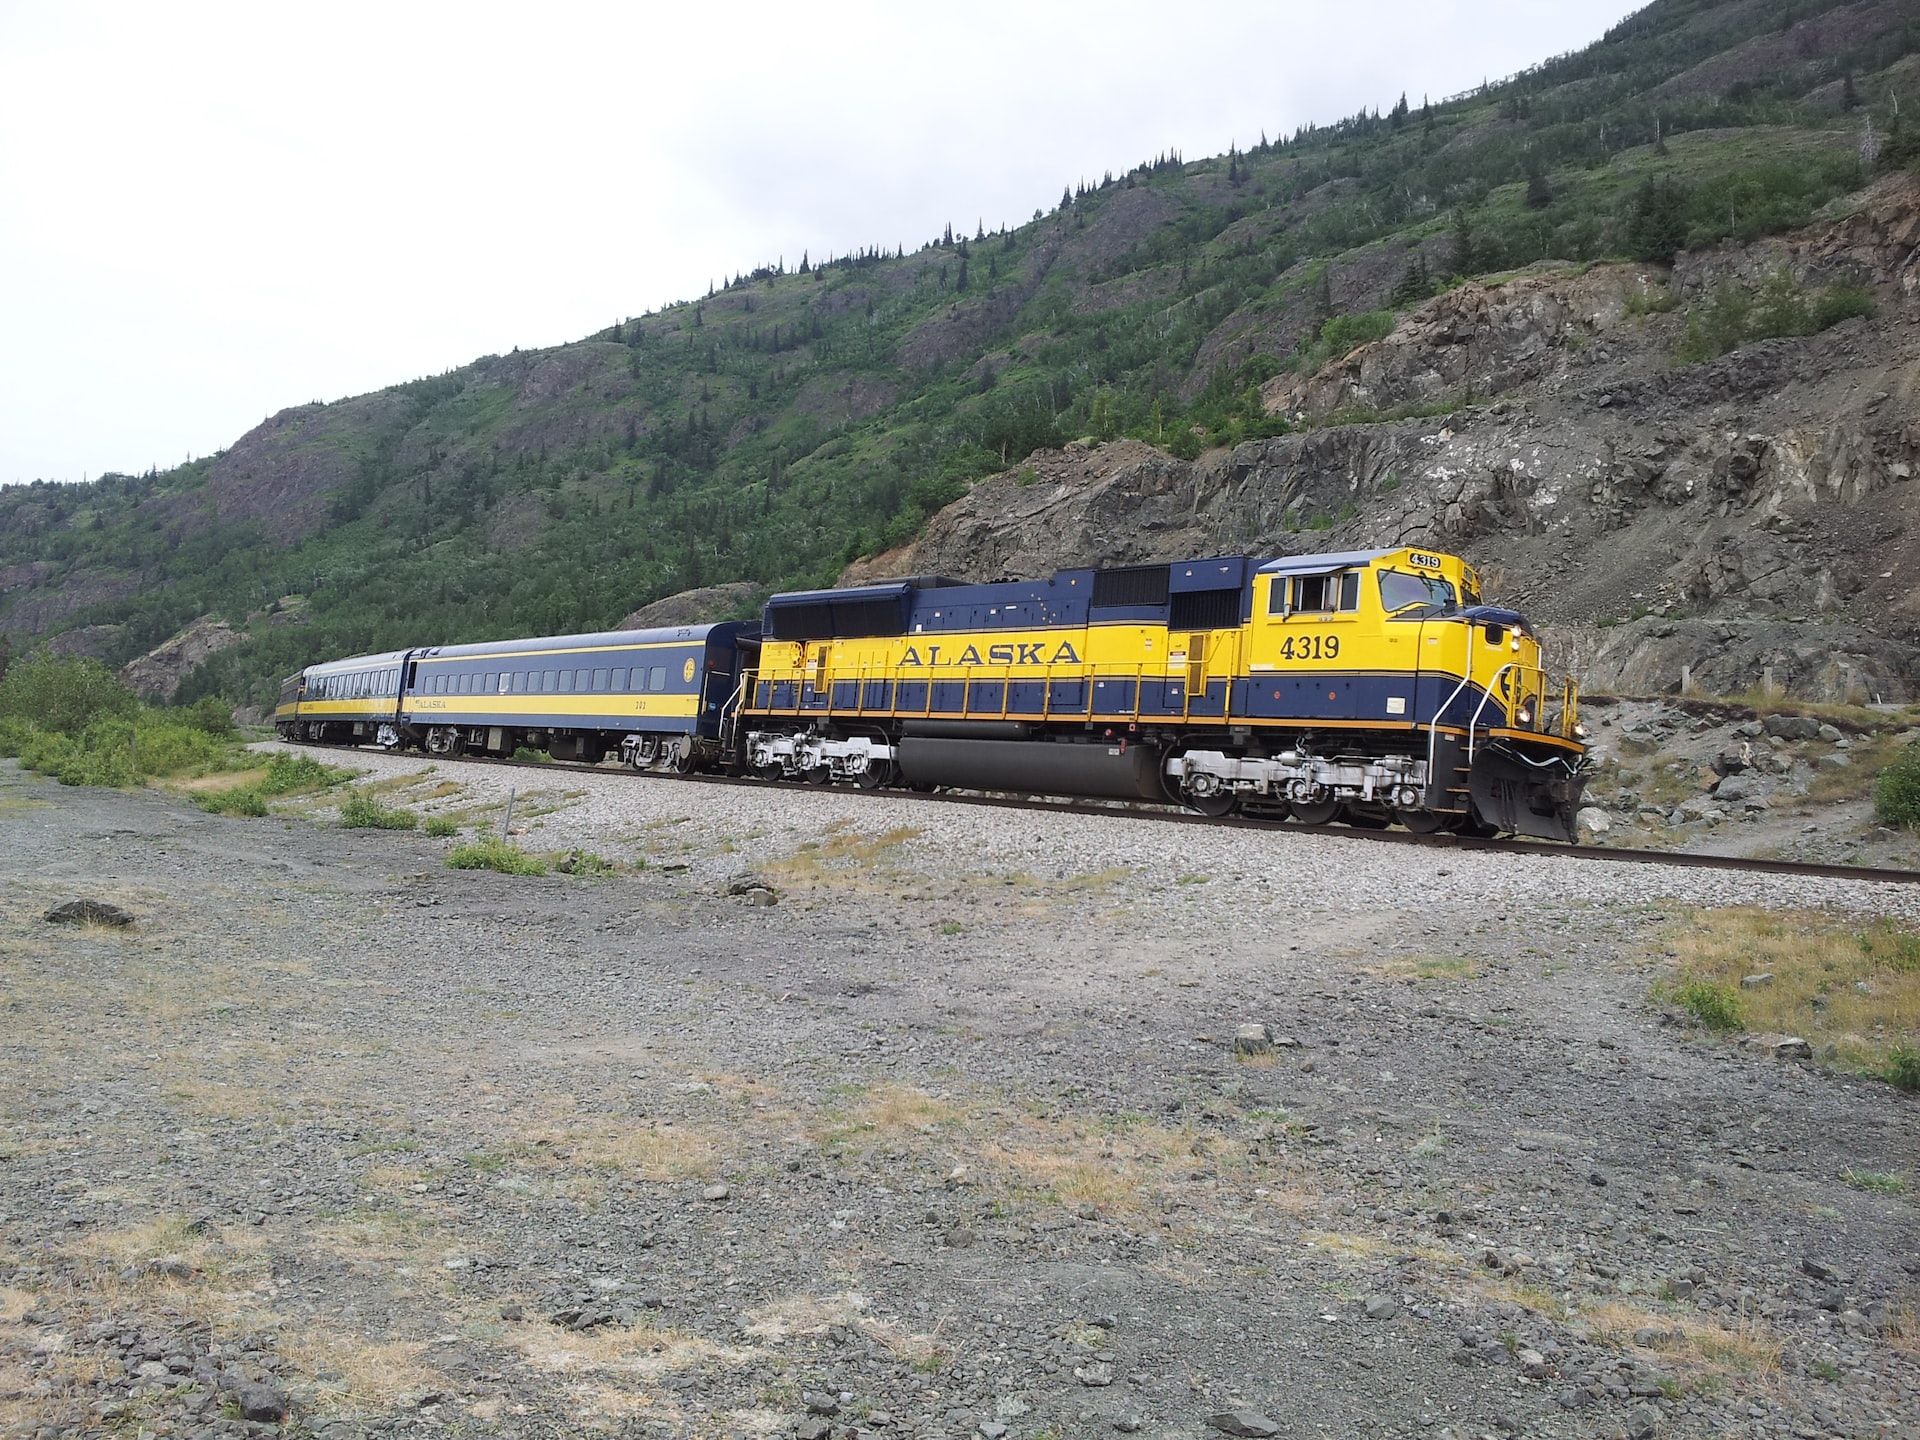 An Alaskan train zips through Anchorage near the Chugach mountain range.